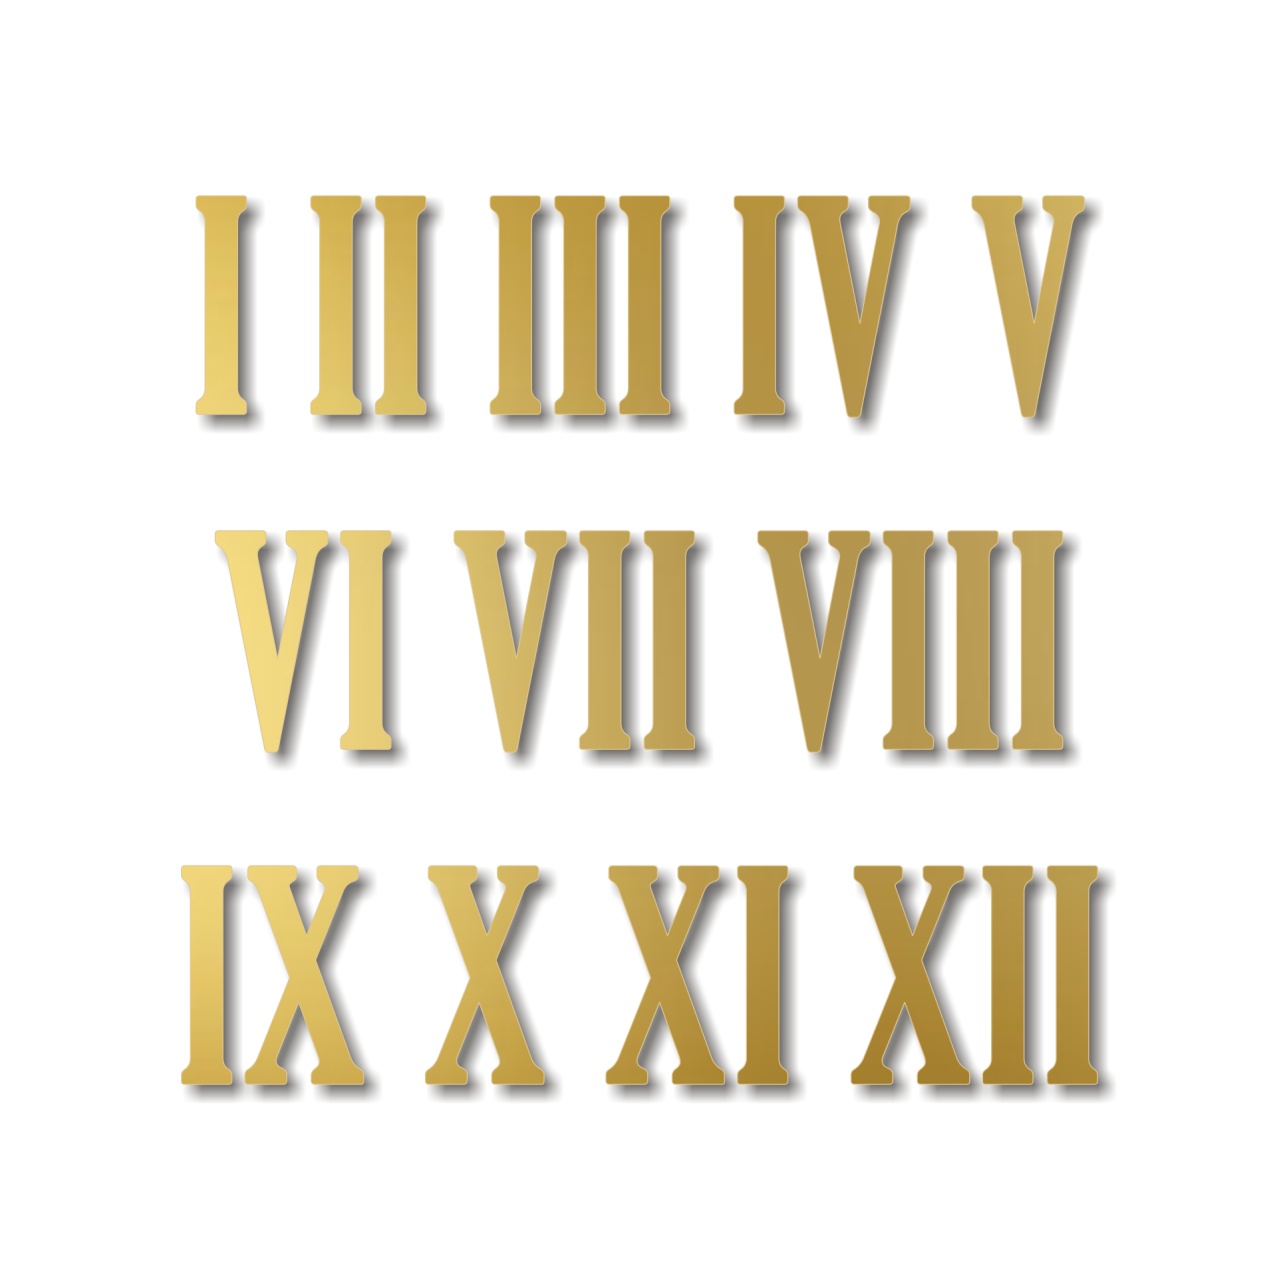 Cifre romane pentru ceas 1-12, 3 cm, plexi oglindă aurie